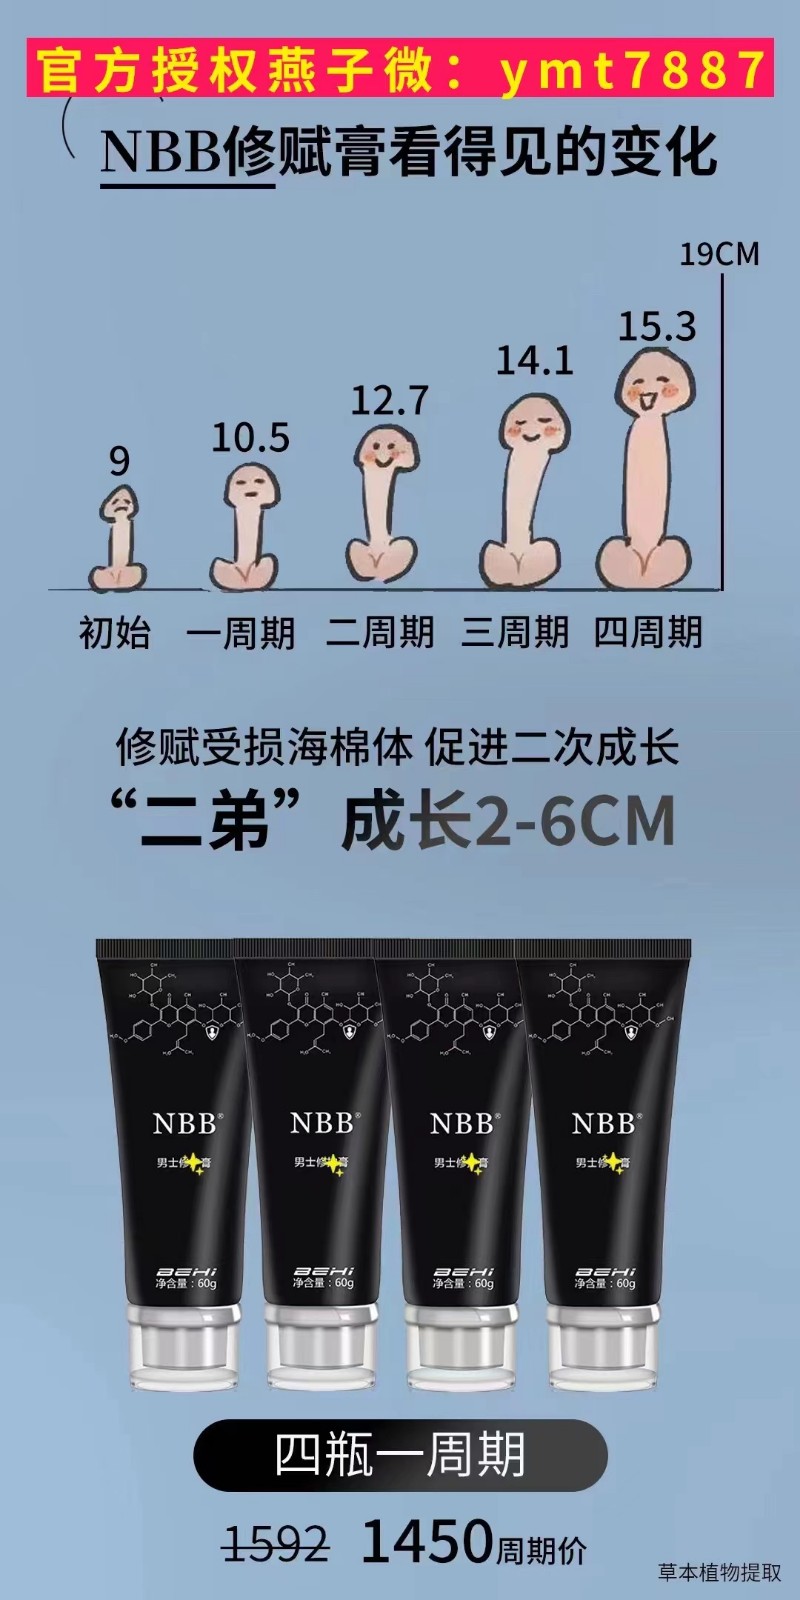  nbb增大膏有没有副作用 真的可以增大 增粗 增硬